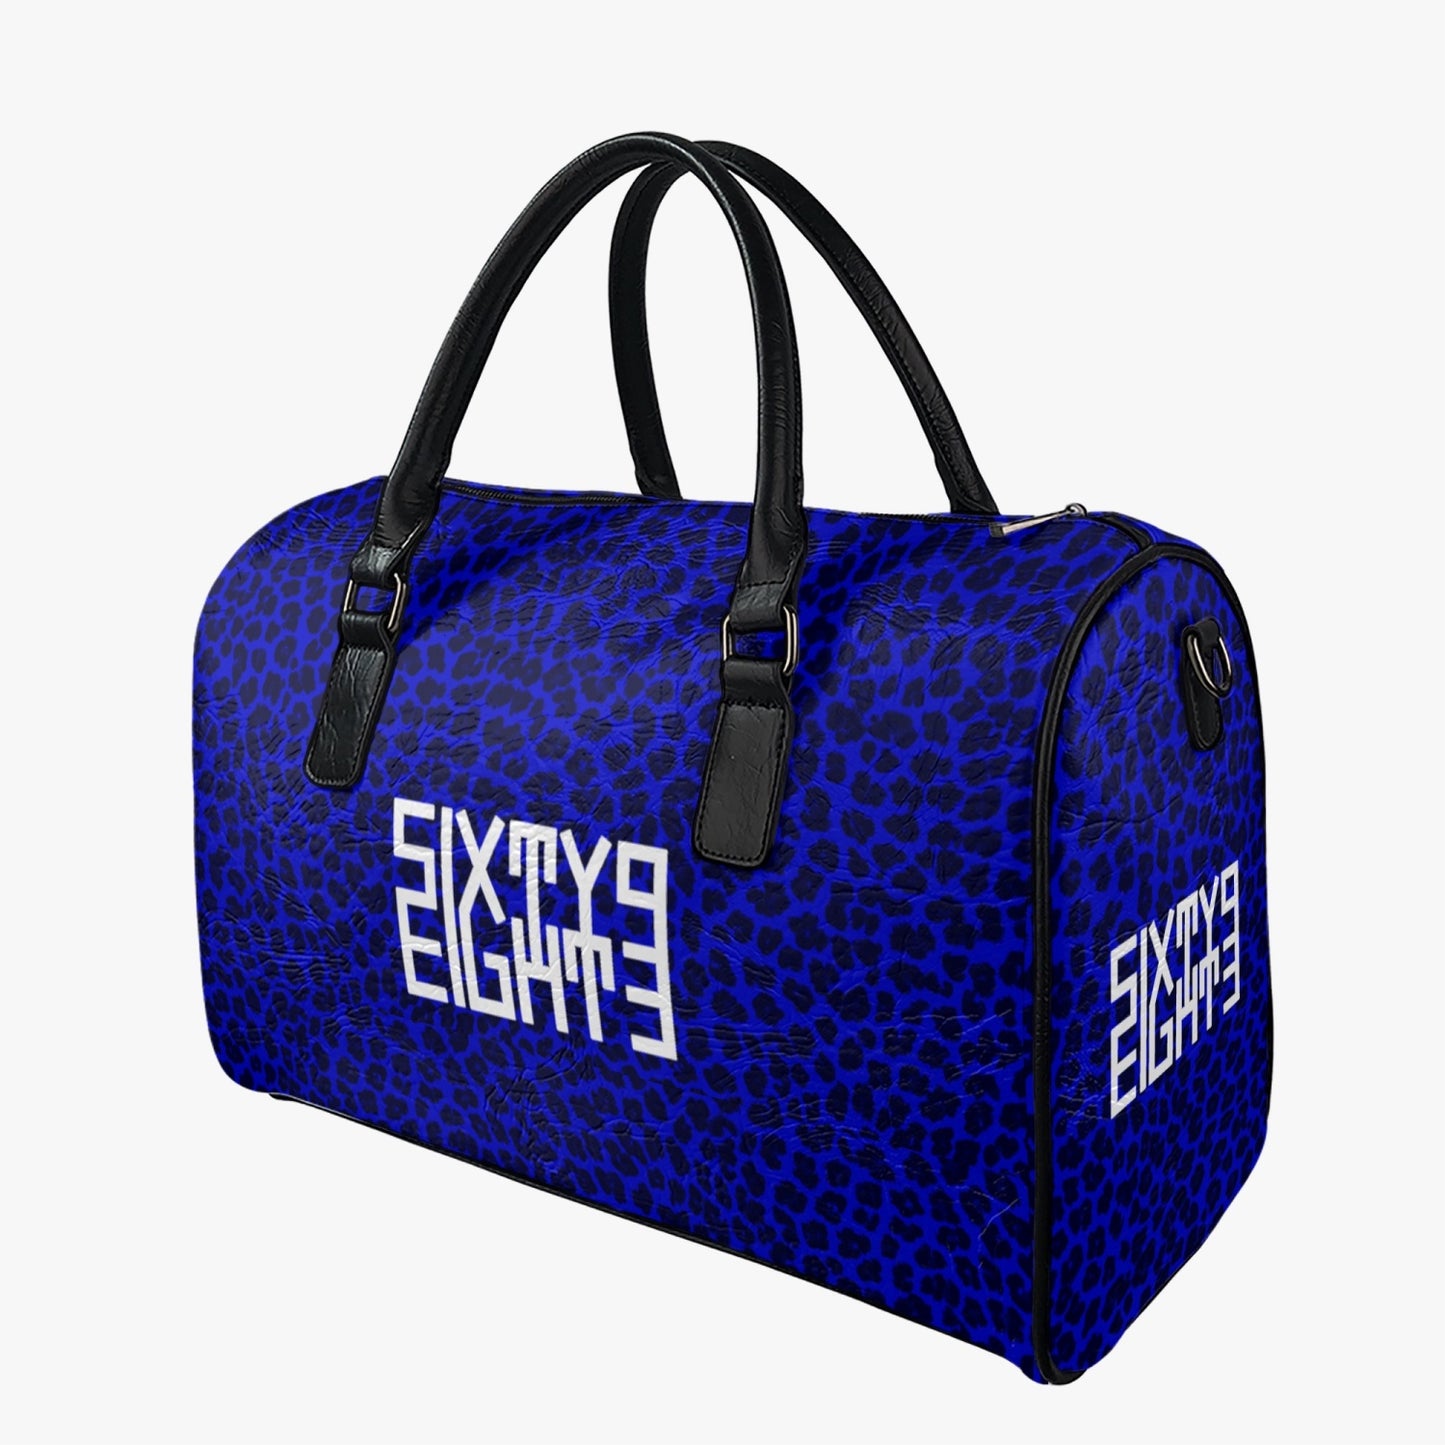 Sixty Eight 93 Logo White Cheetah Blue Leather Portable Travel Bag